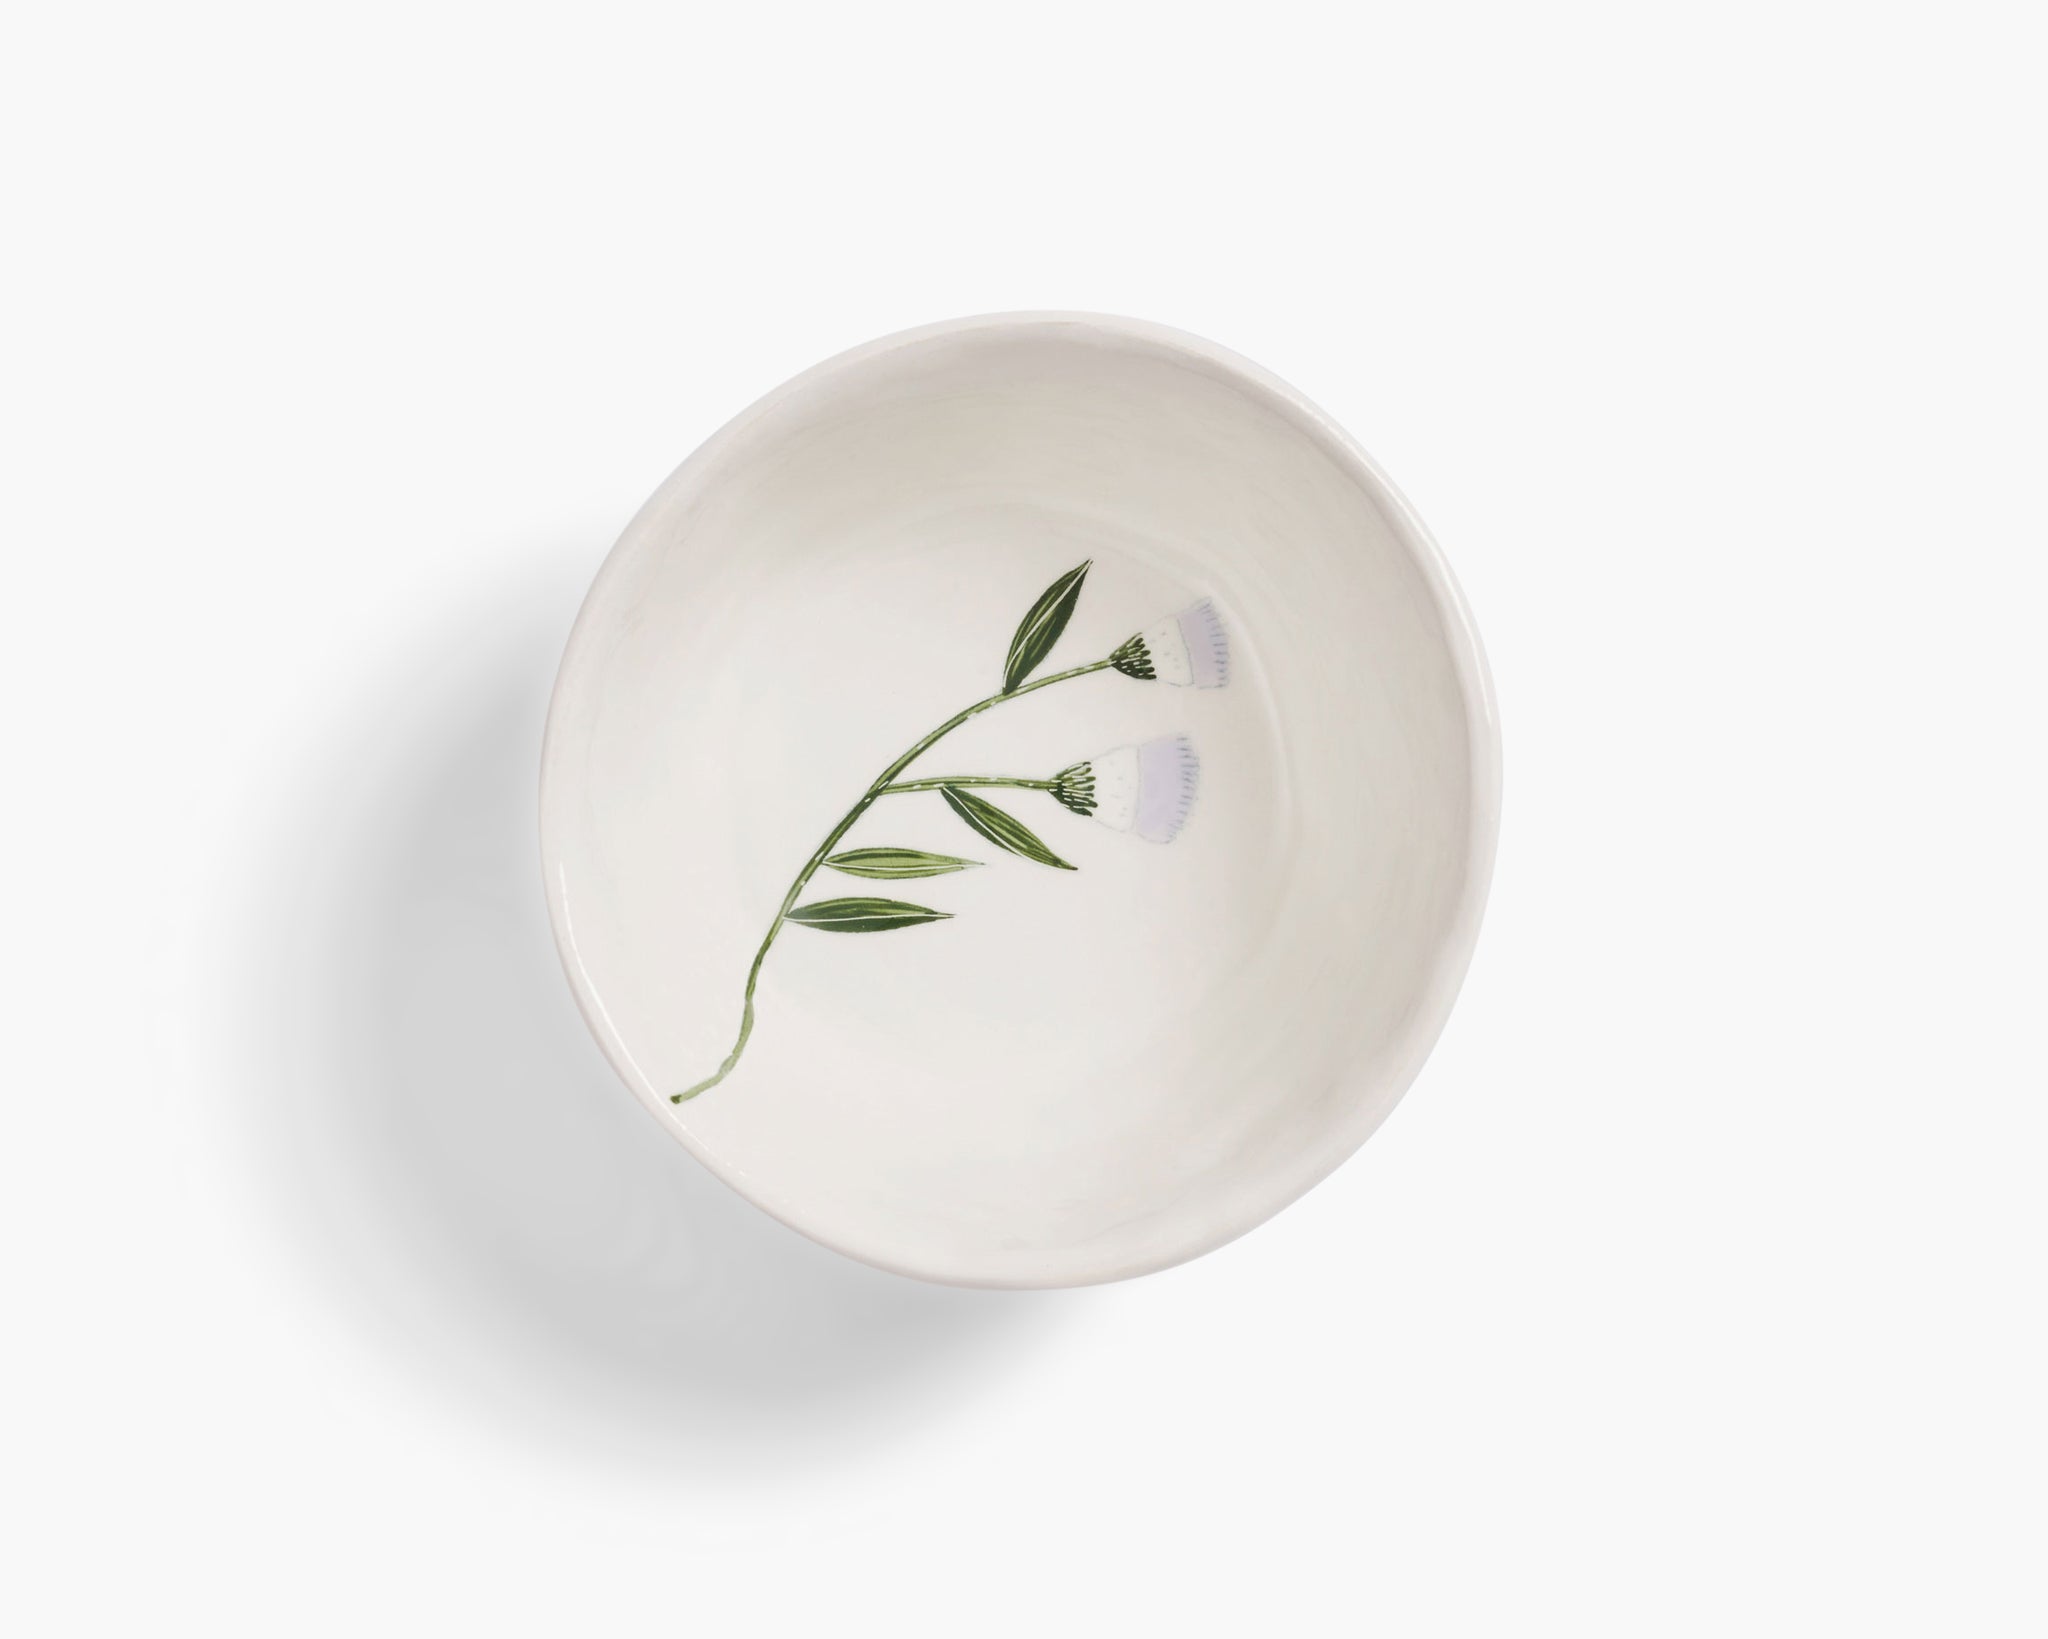 Gemma Orkin 'Wild Flowers' Bowl - White Wash